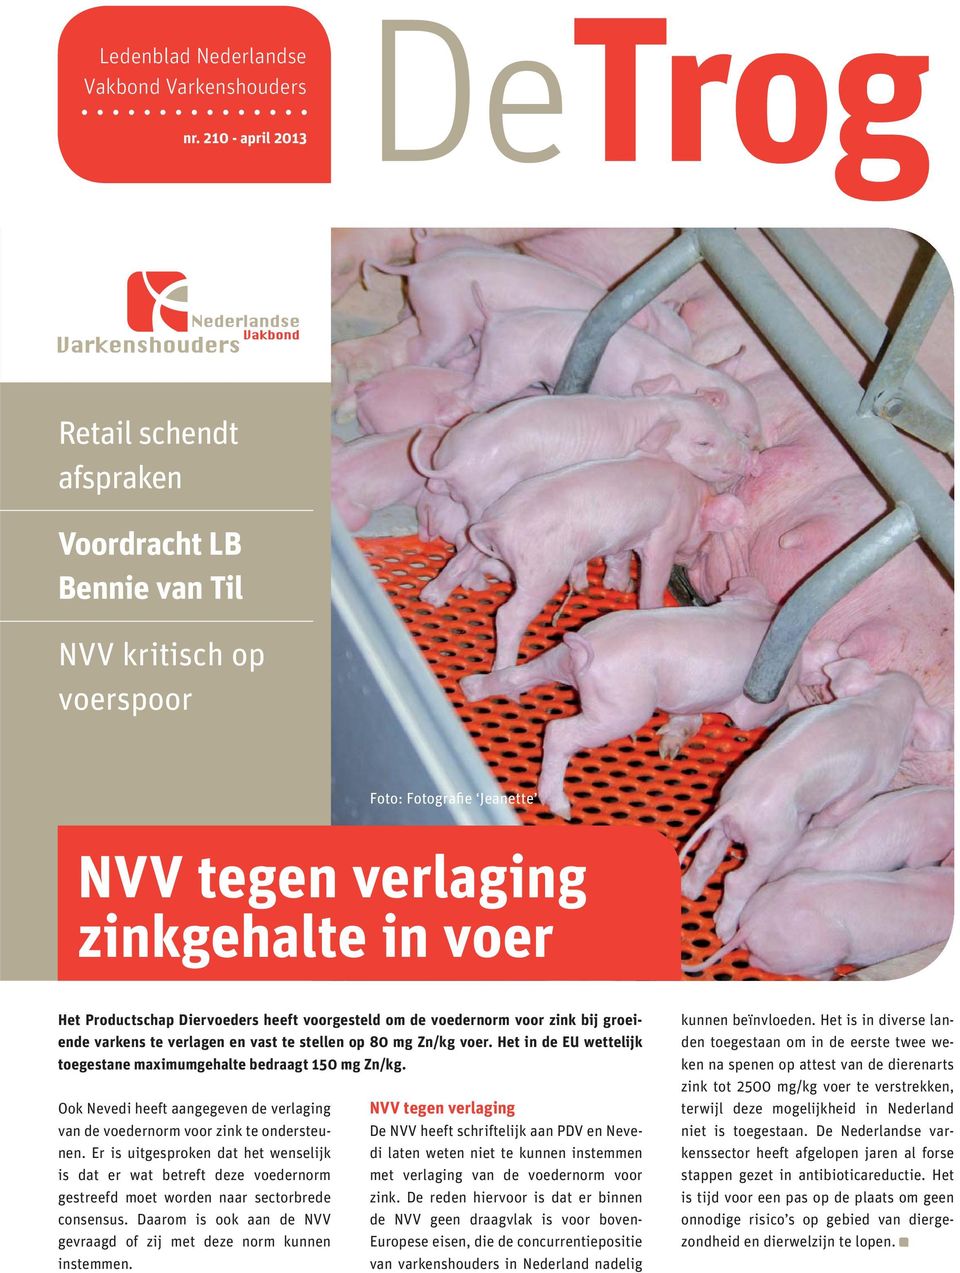 voorgesteld om de voedernorm voor zink bij groeiende varkens te verlagen en vast te stellen op 80 mg Zn/kg voer. Het in de EU wettelijk toegestane maximumgehalte bedraagt 150 mg Zn/kg.